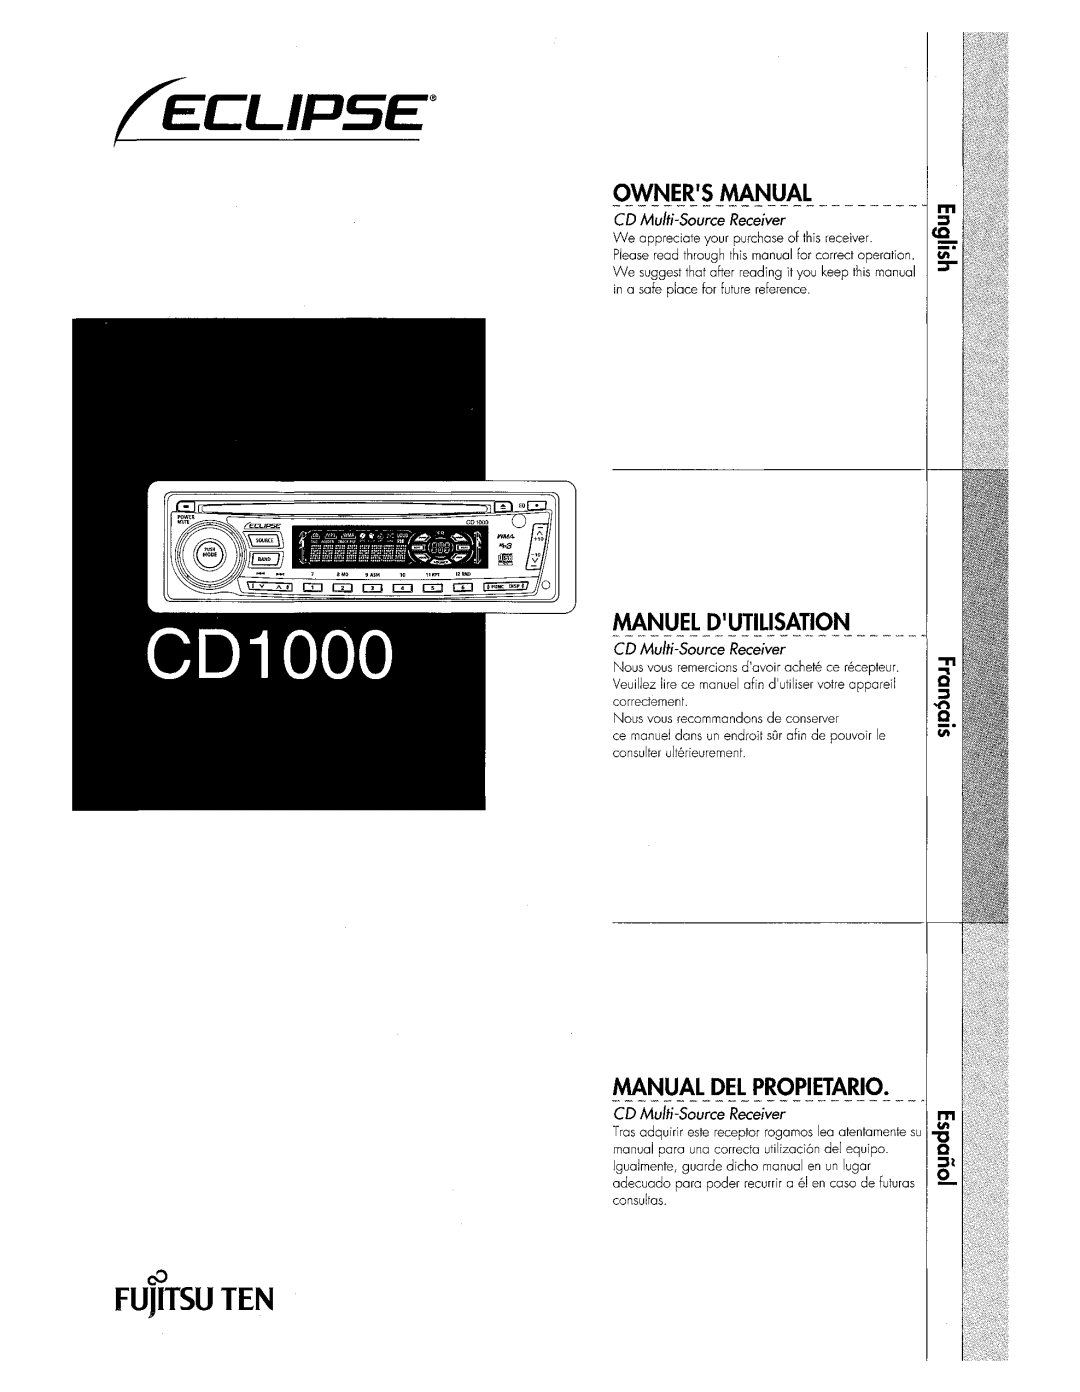 Eclipse - Fujitsu Ten CD1000 manual 